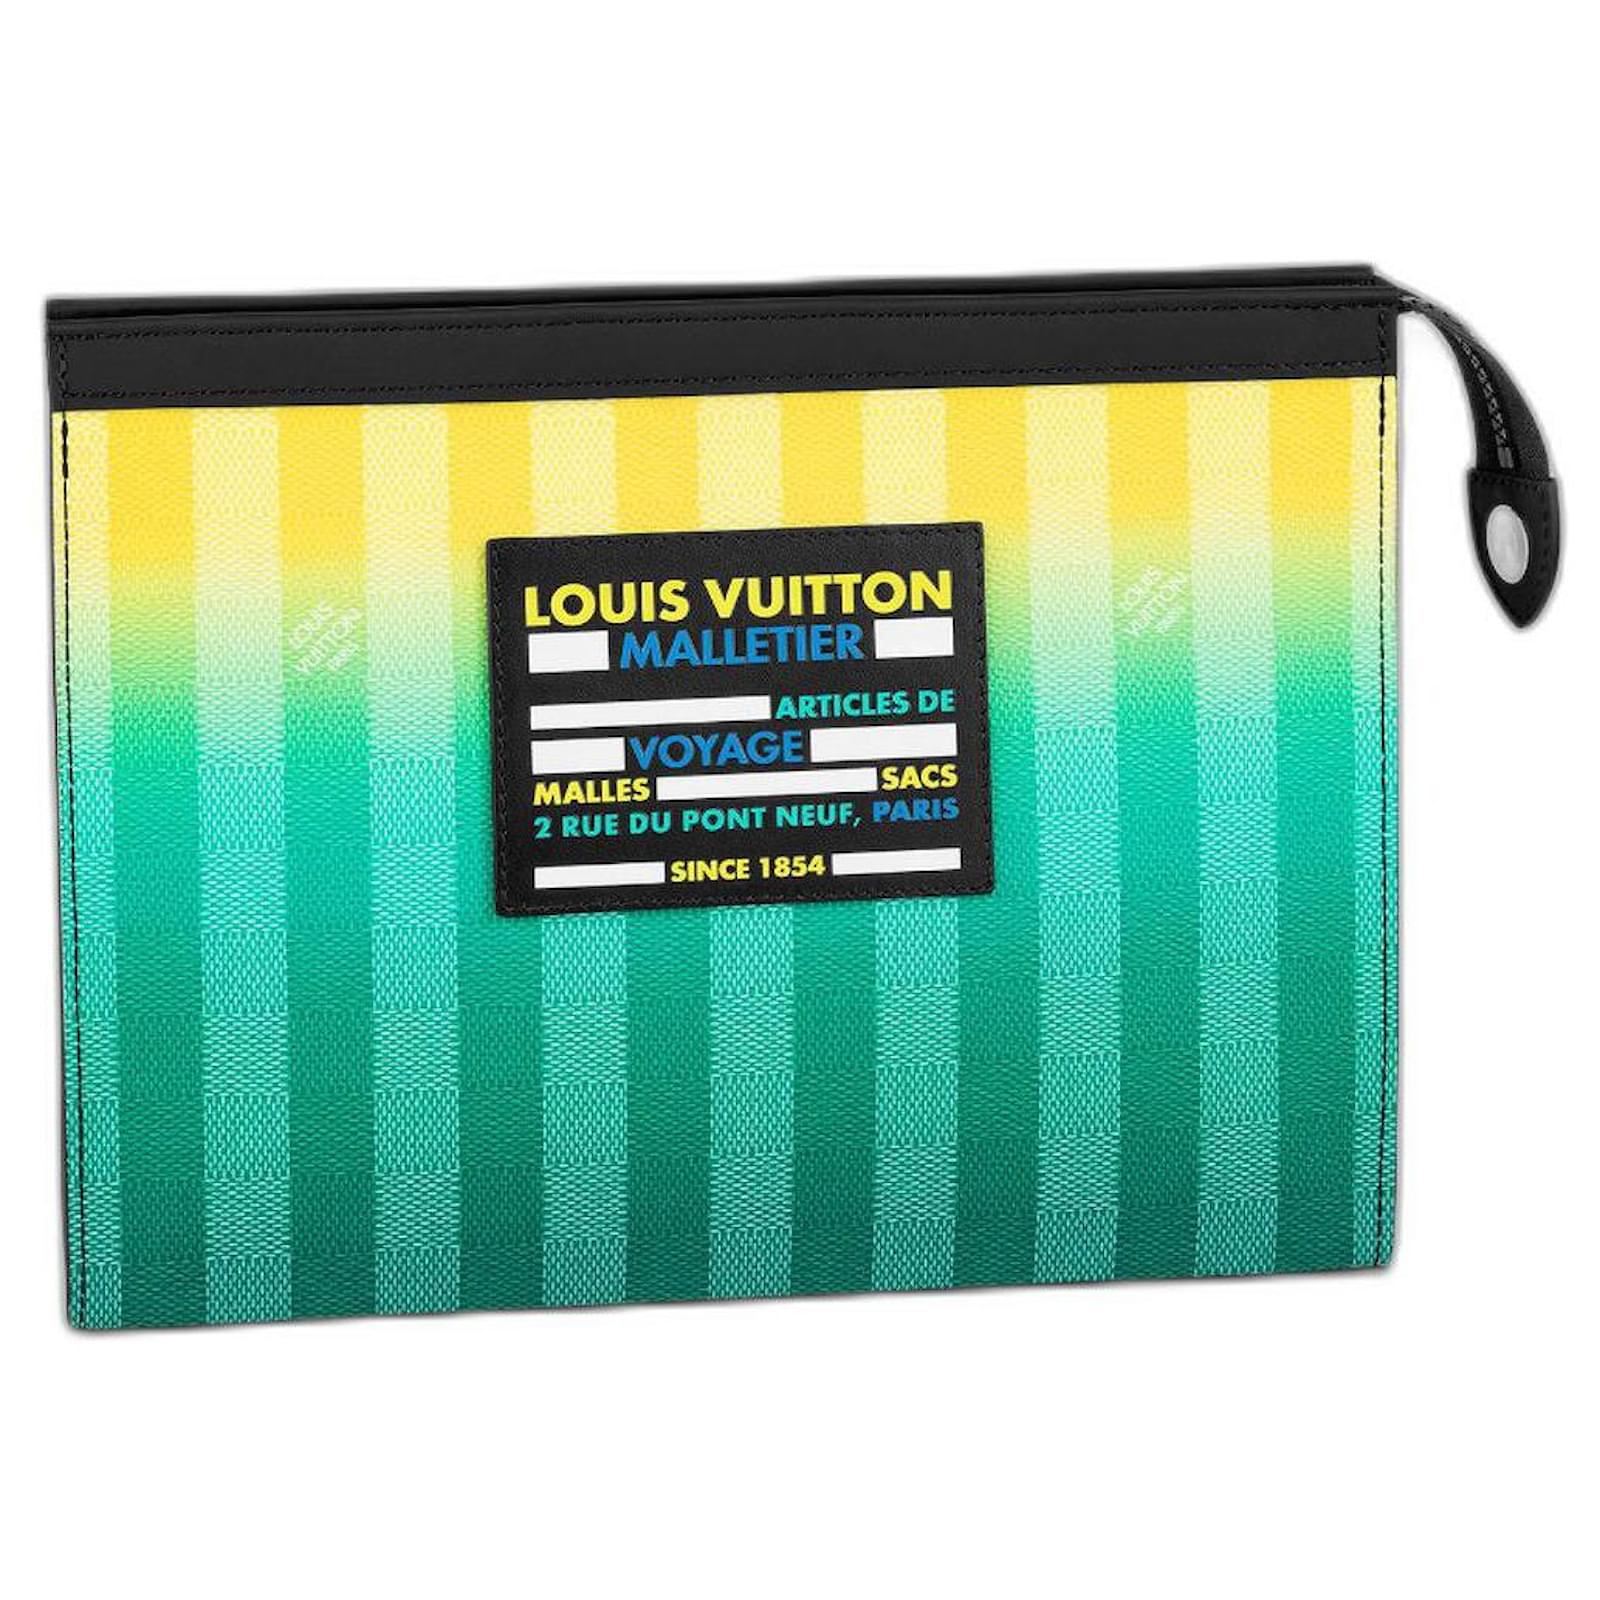 Louis Vuitton Malletier Paris 1854 Leather Wallet